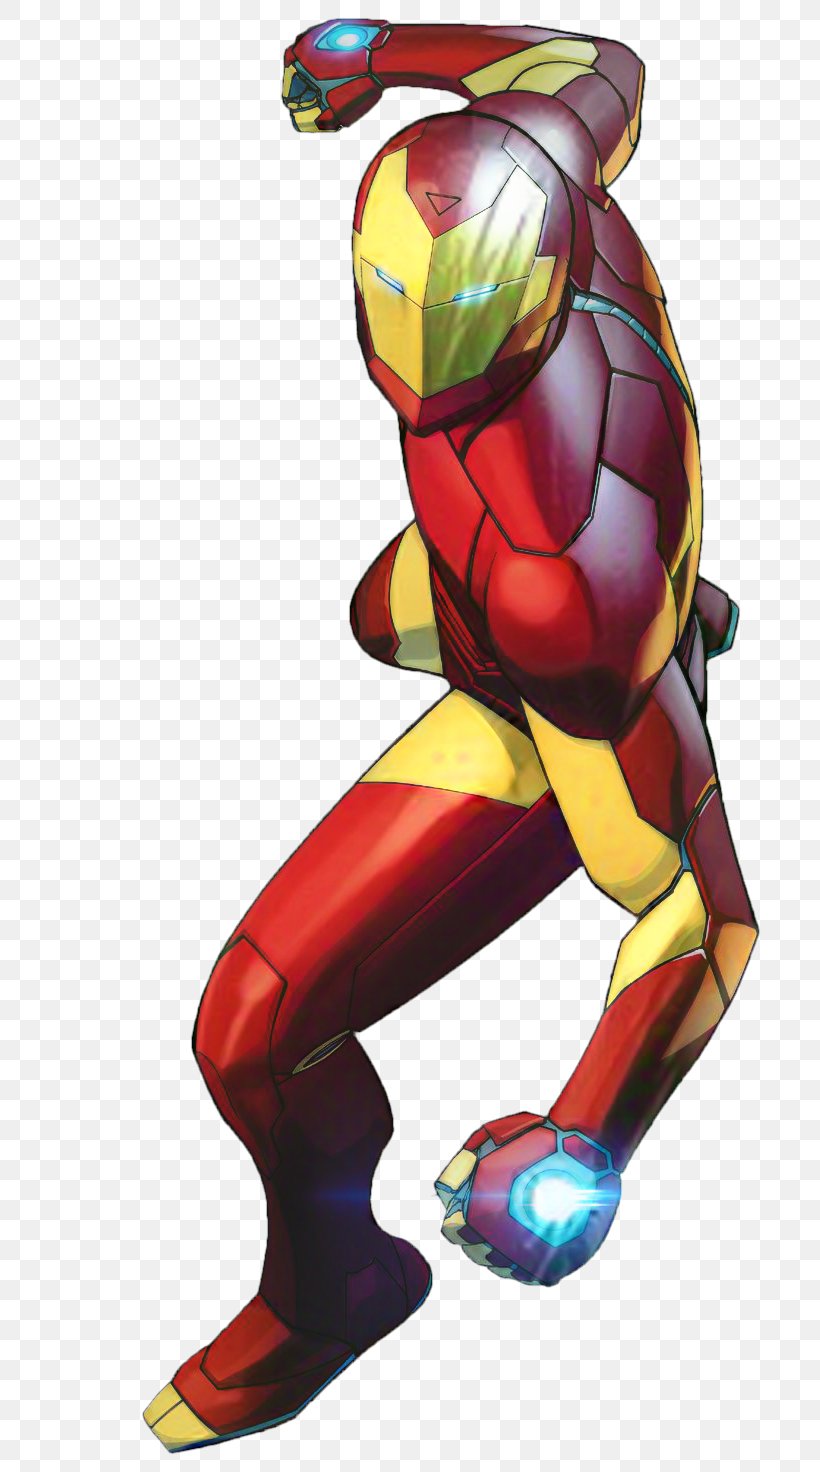 Iron Man's Armor Ultron Superhero Marvel Comics, PNG, 736x1472px, Iron Man, Comic Book, Comics, Fictional Character, Iron Man 3 Download Free